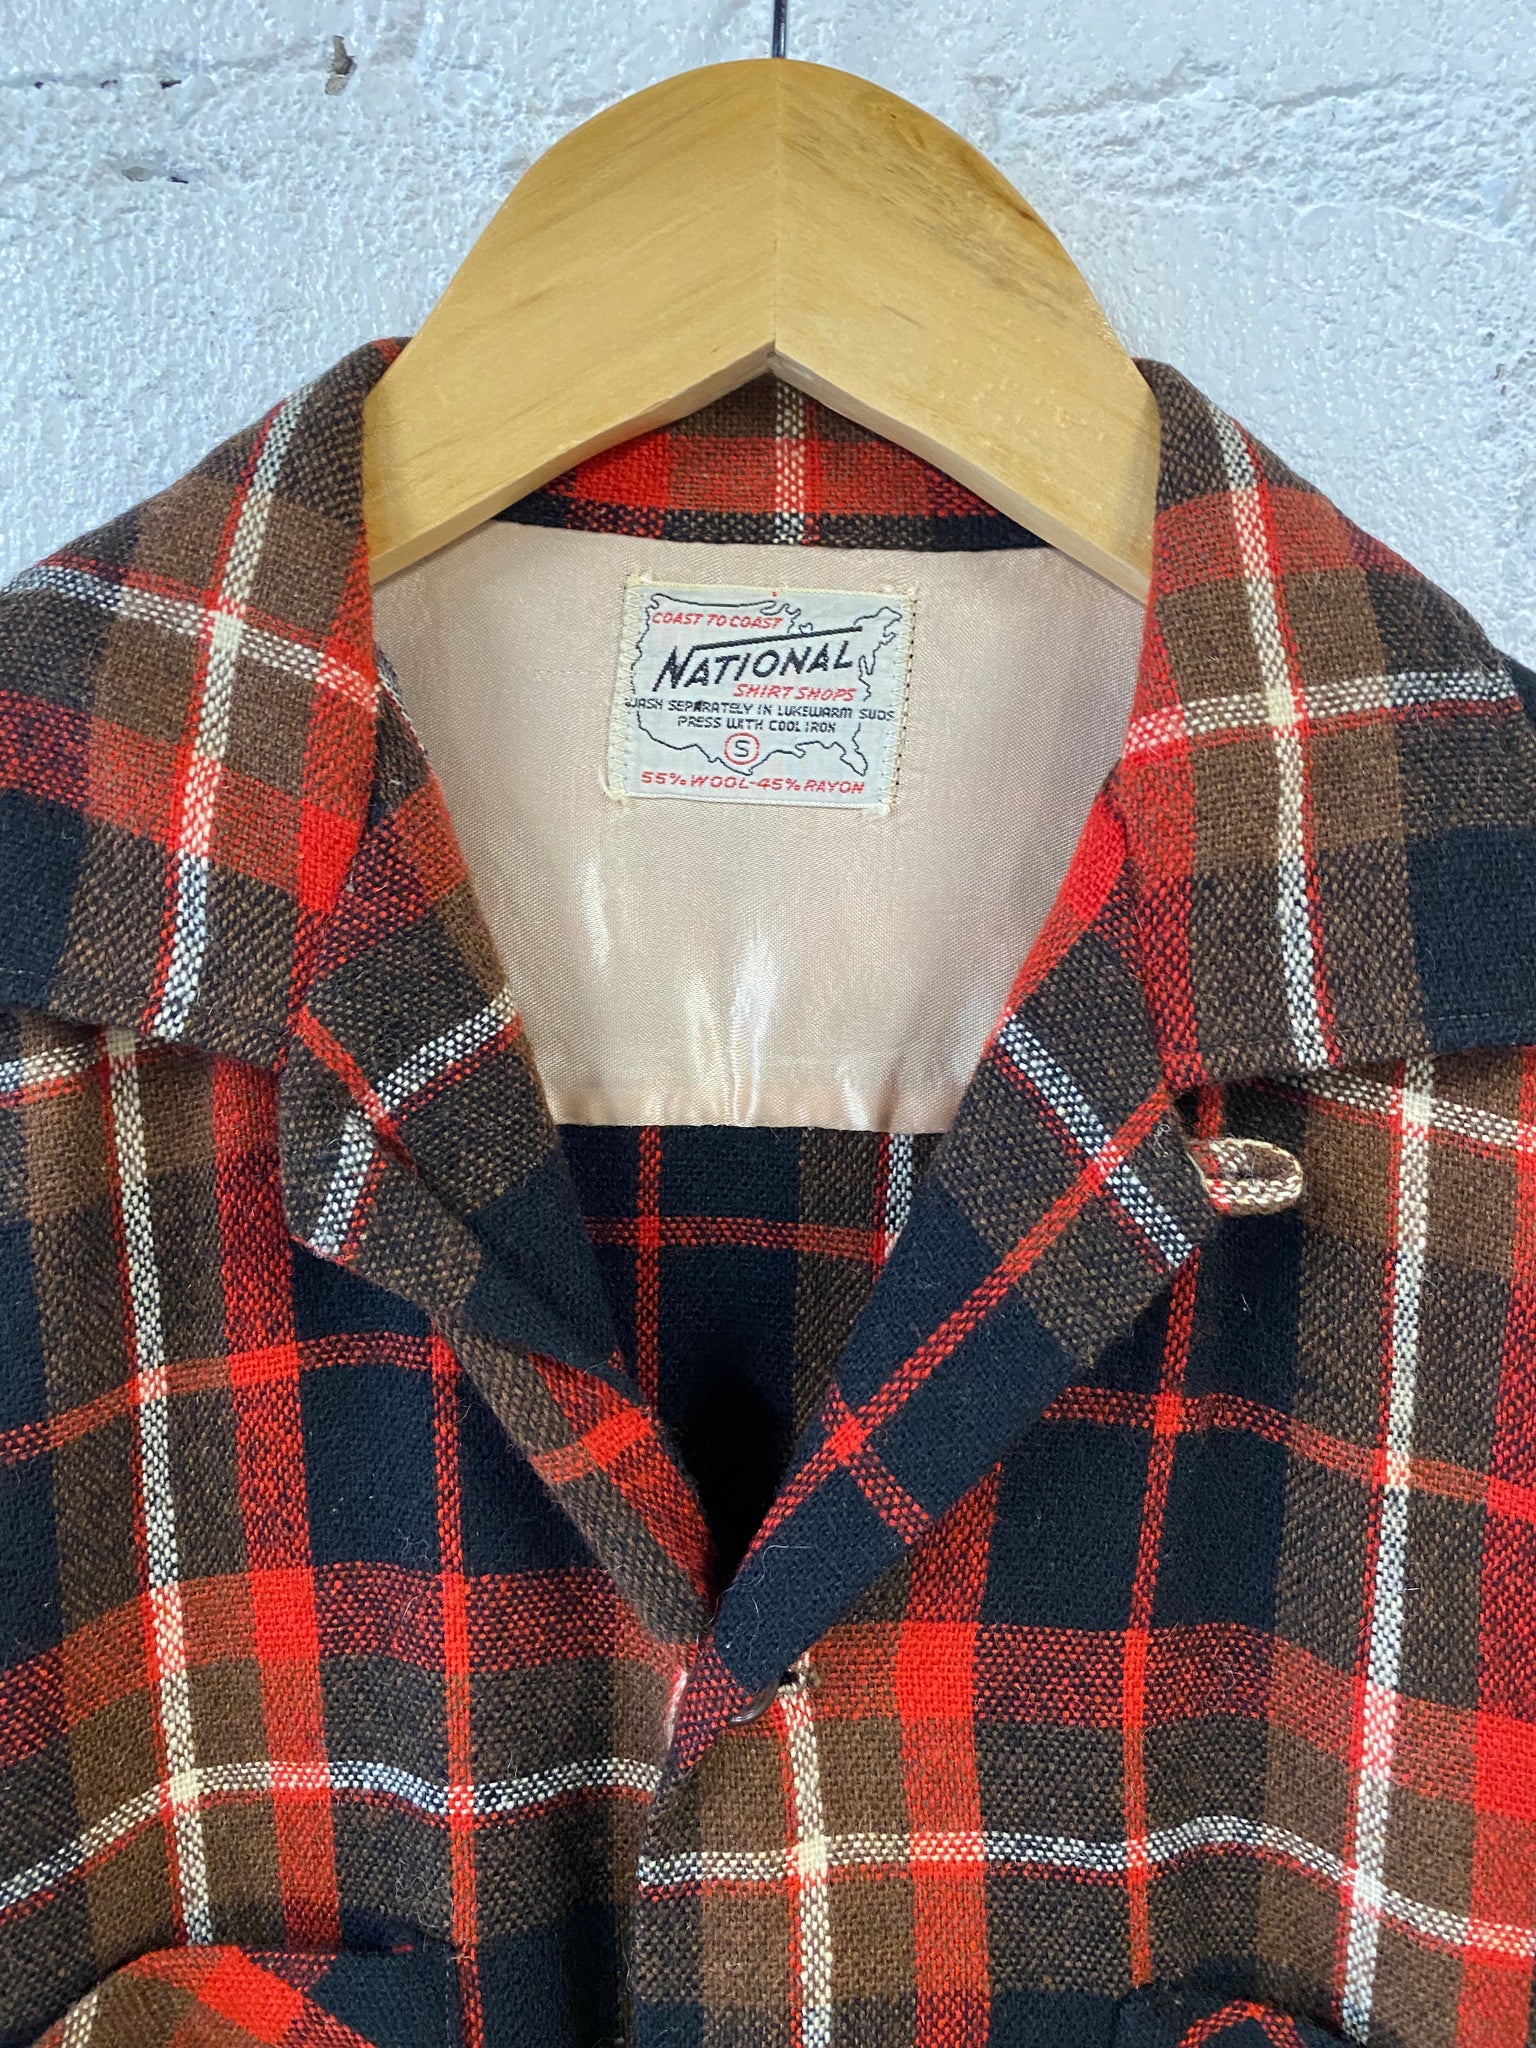 Vintage Plaid Jacket/Top